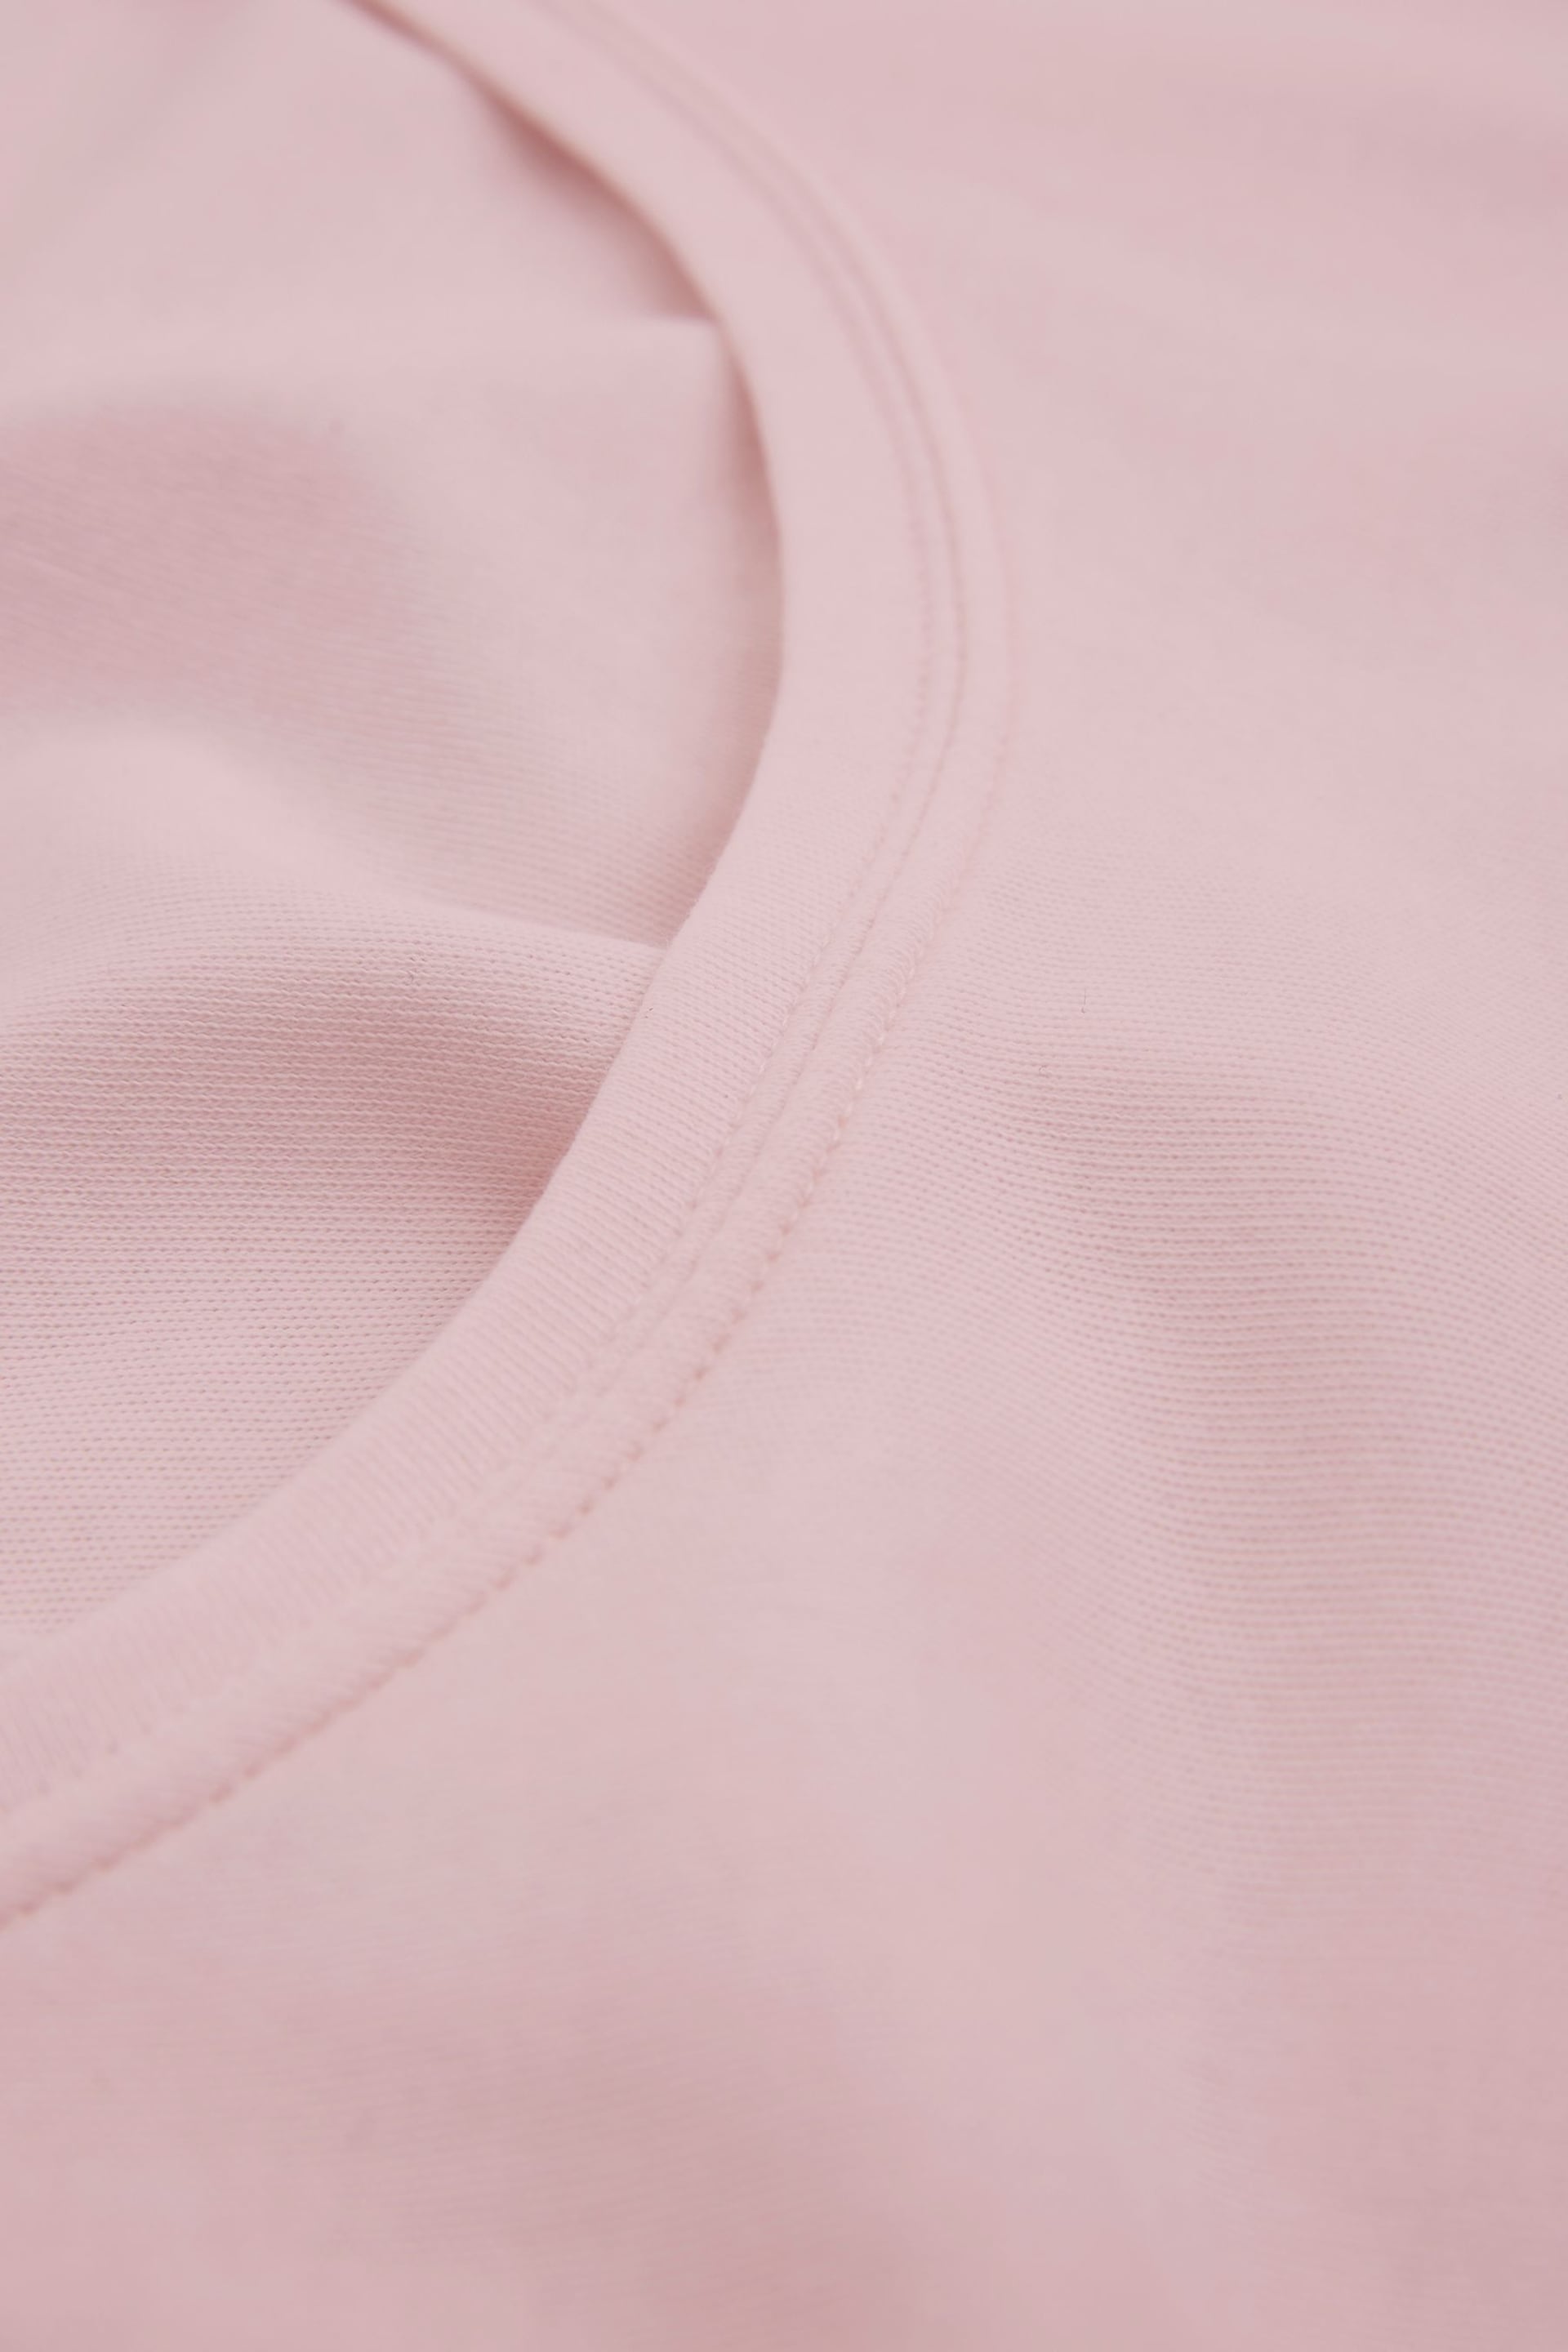 Celtic & Co Pink Slim Fit T-Shirt - Image 5 of 7